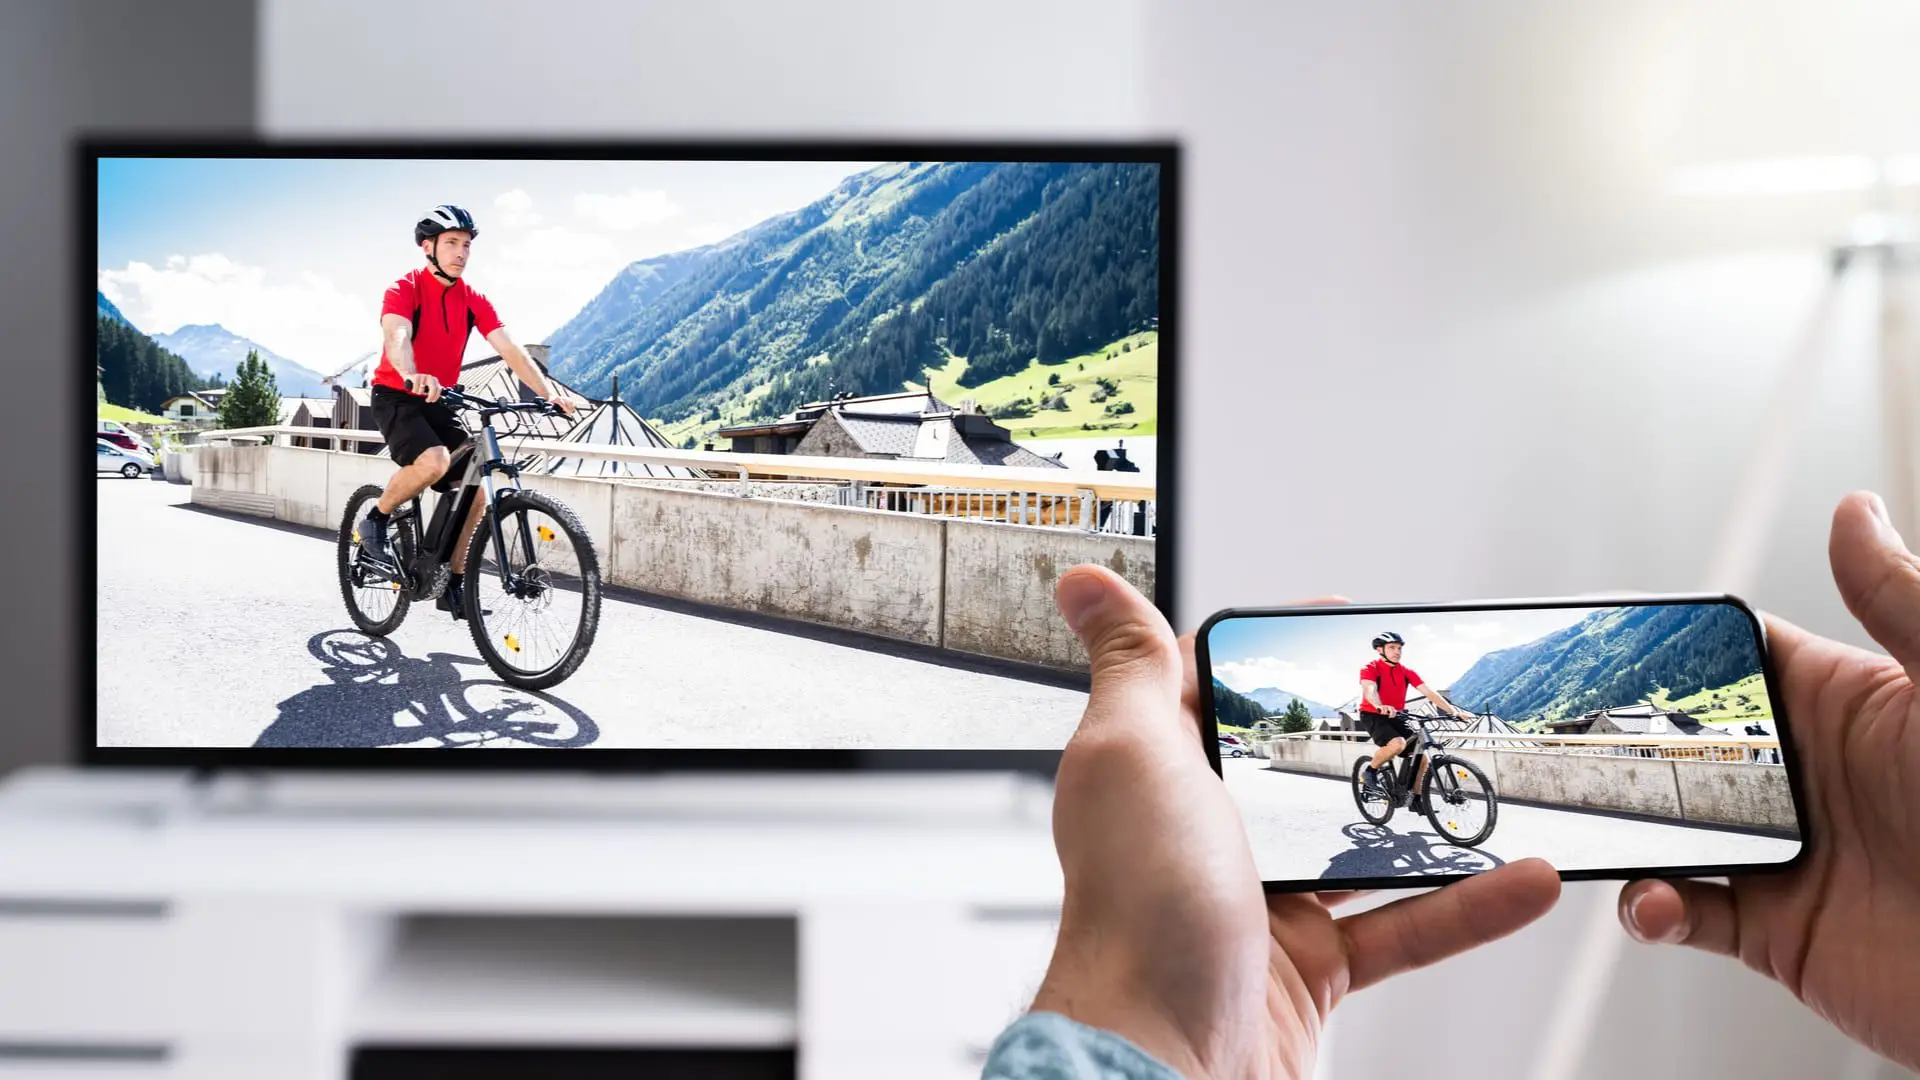 Homem usa smartphone Android para ensinar como passar imagem do celular para tv